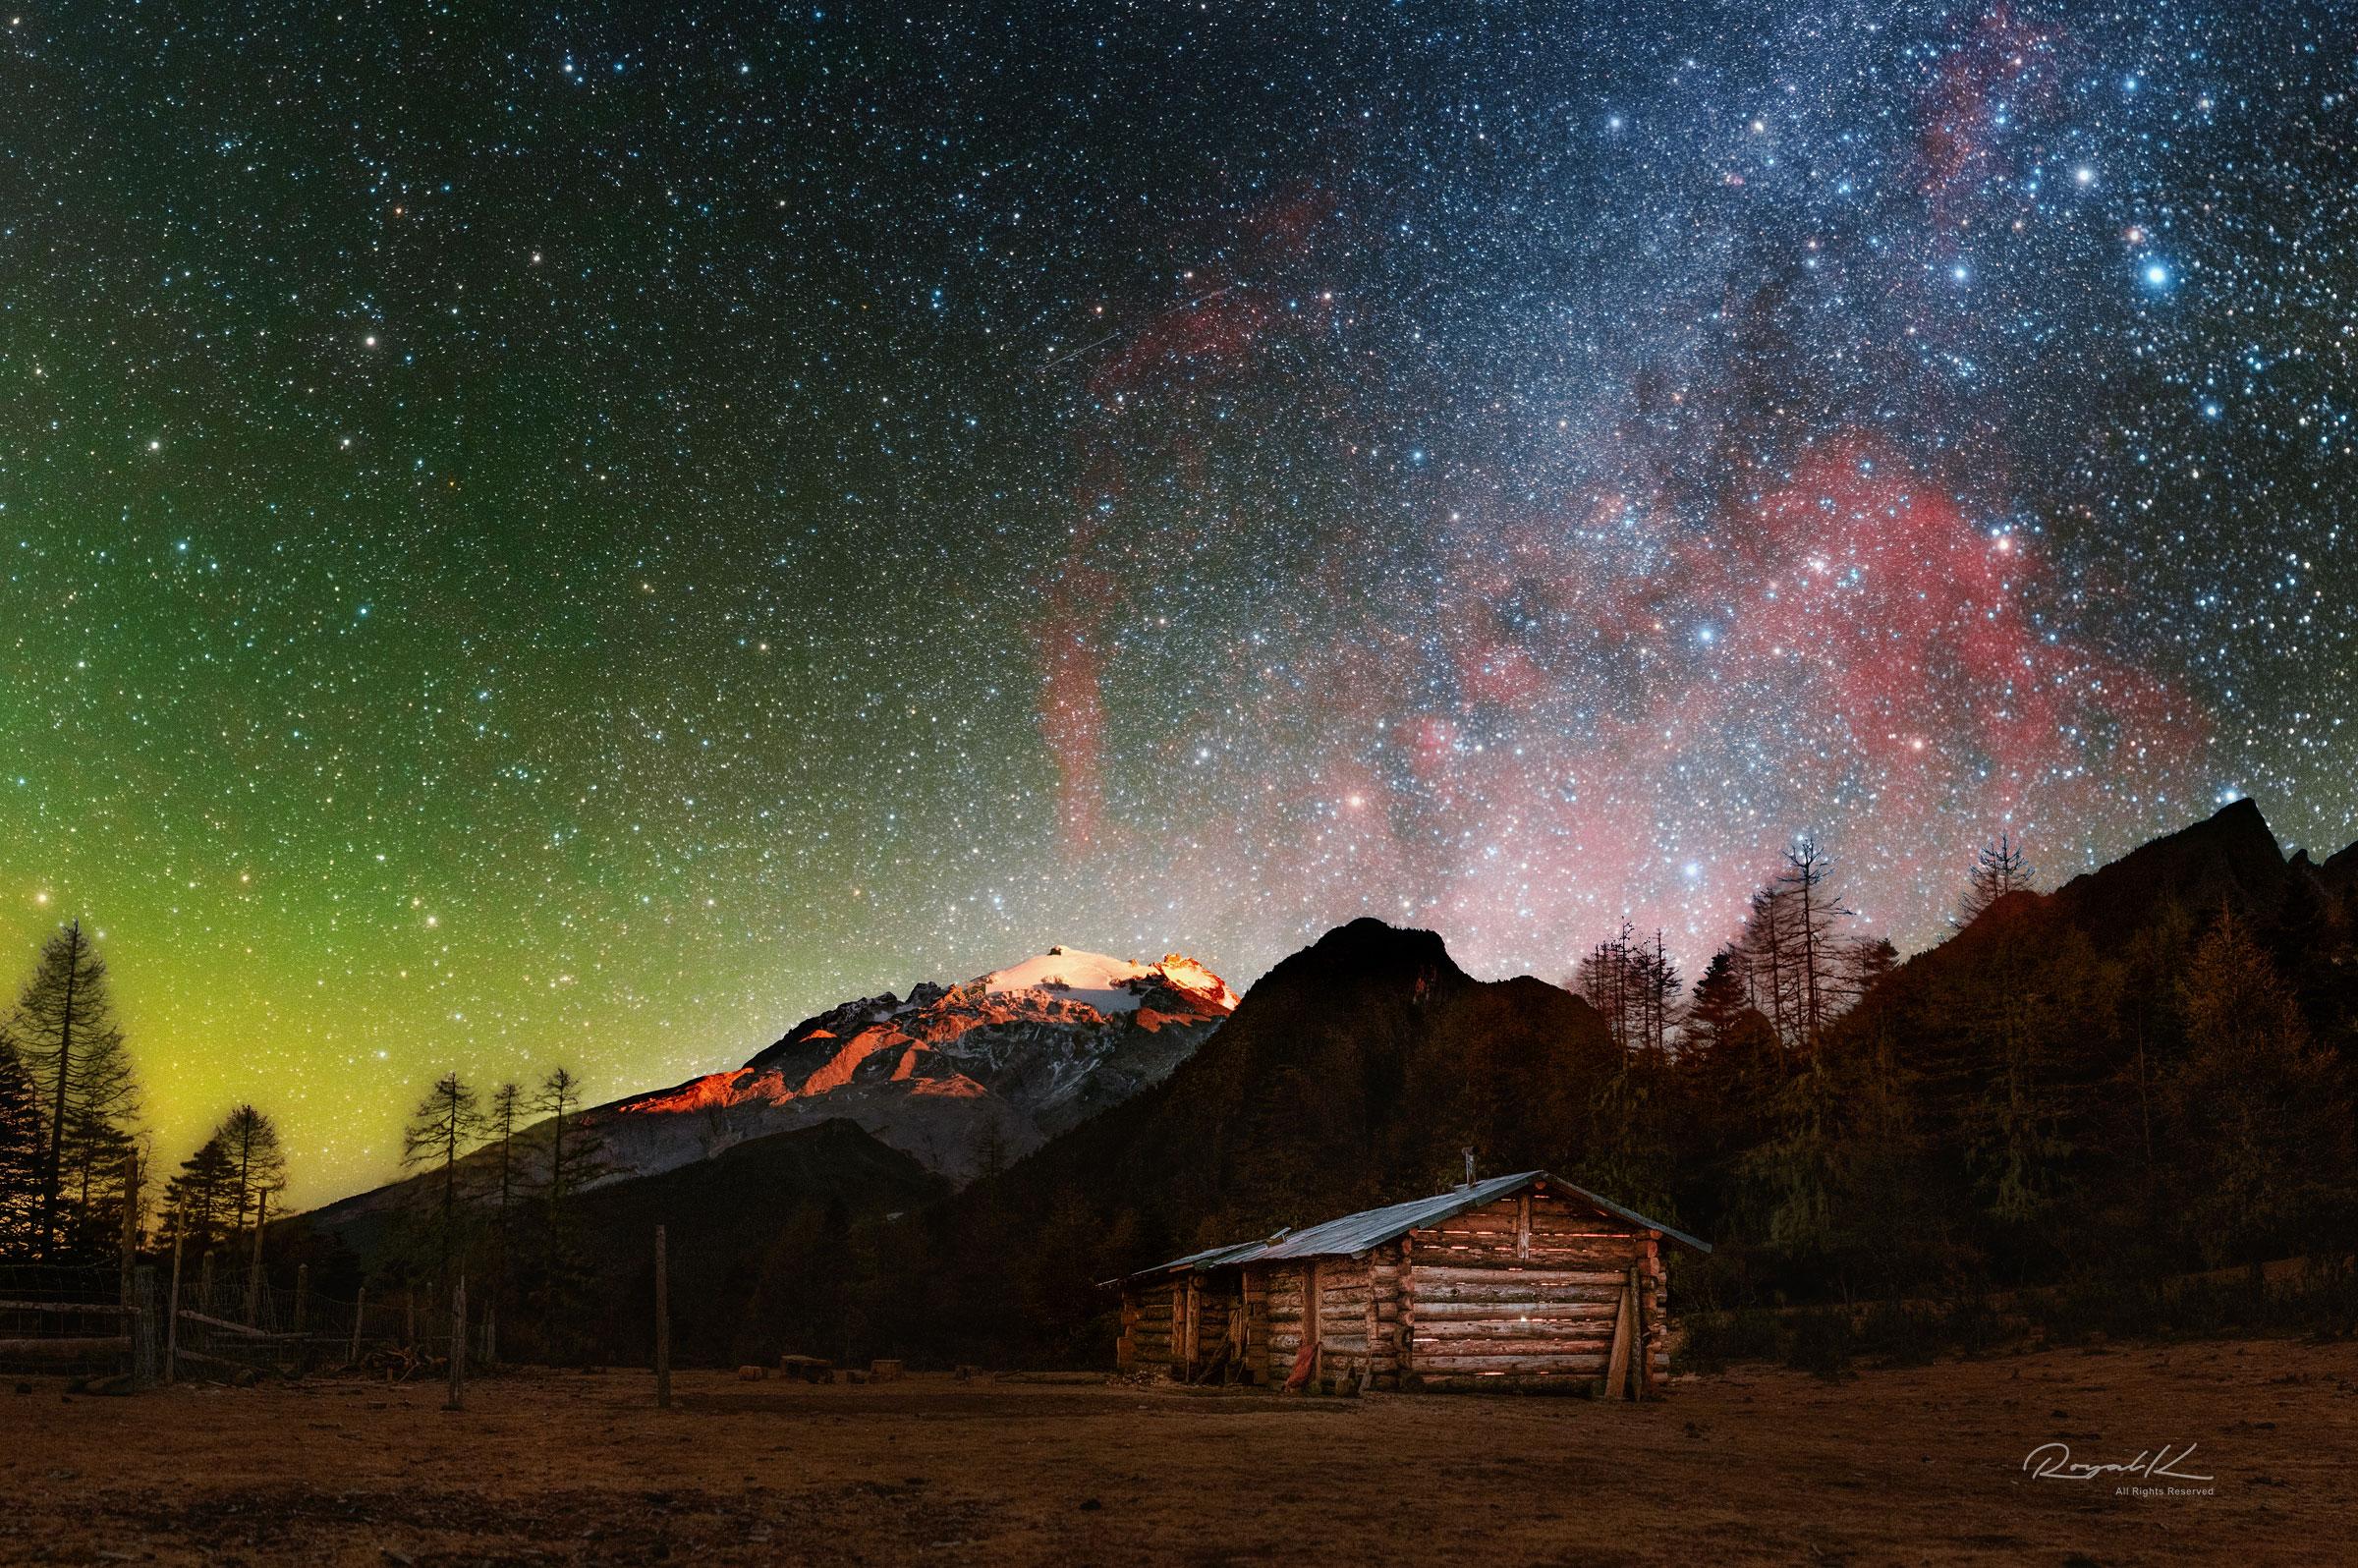 سماء ملوّنة يظهر فيها السديم المحمرّ الكبير وحوله النجوم وتحته جبل مكسو بالثلوج وفي المقدّمة أرض فيها كوخ خشبي وحوله أشجار